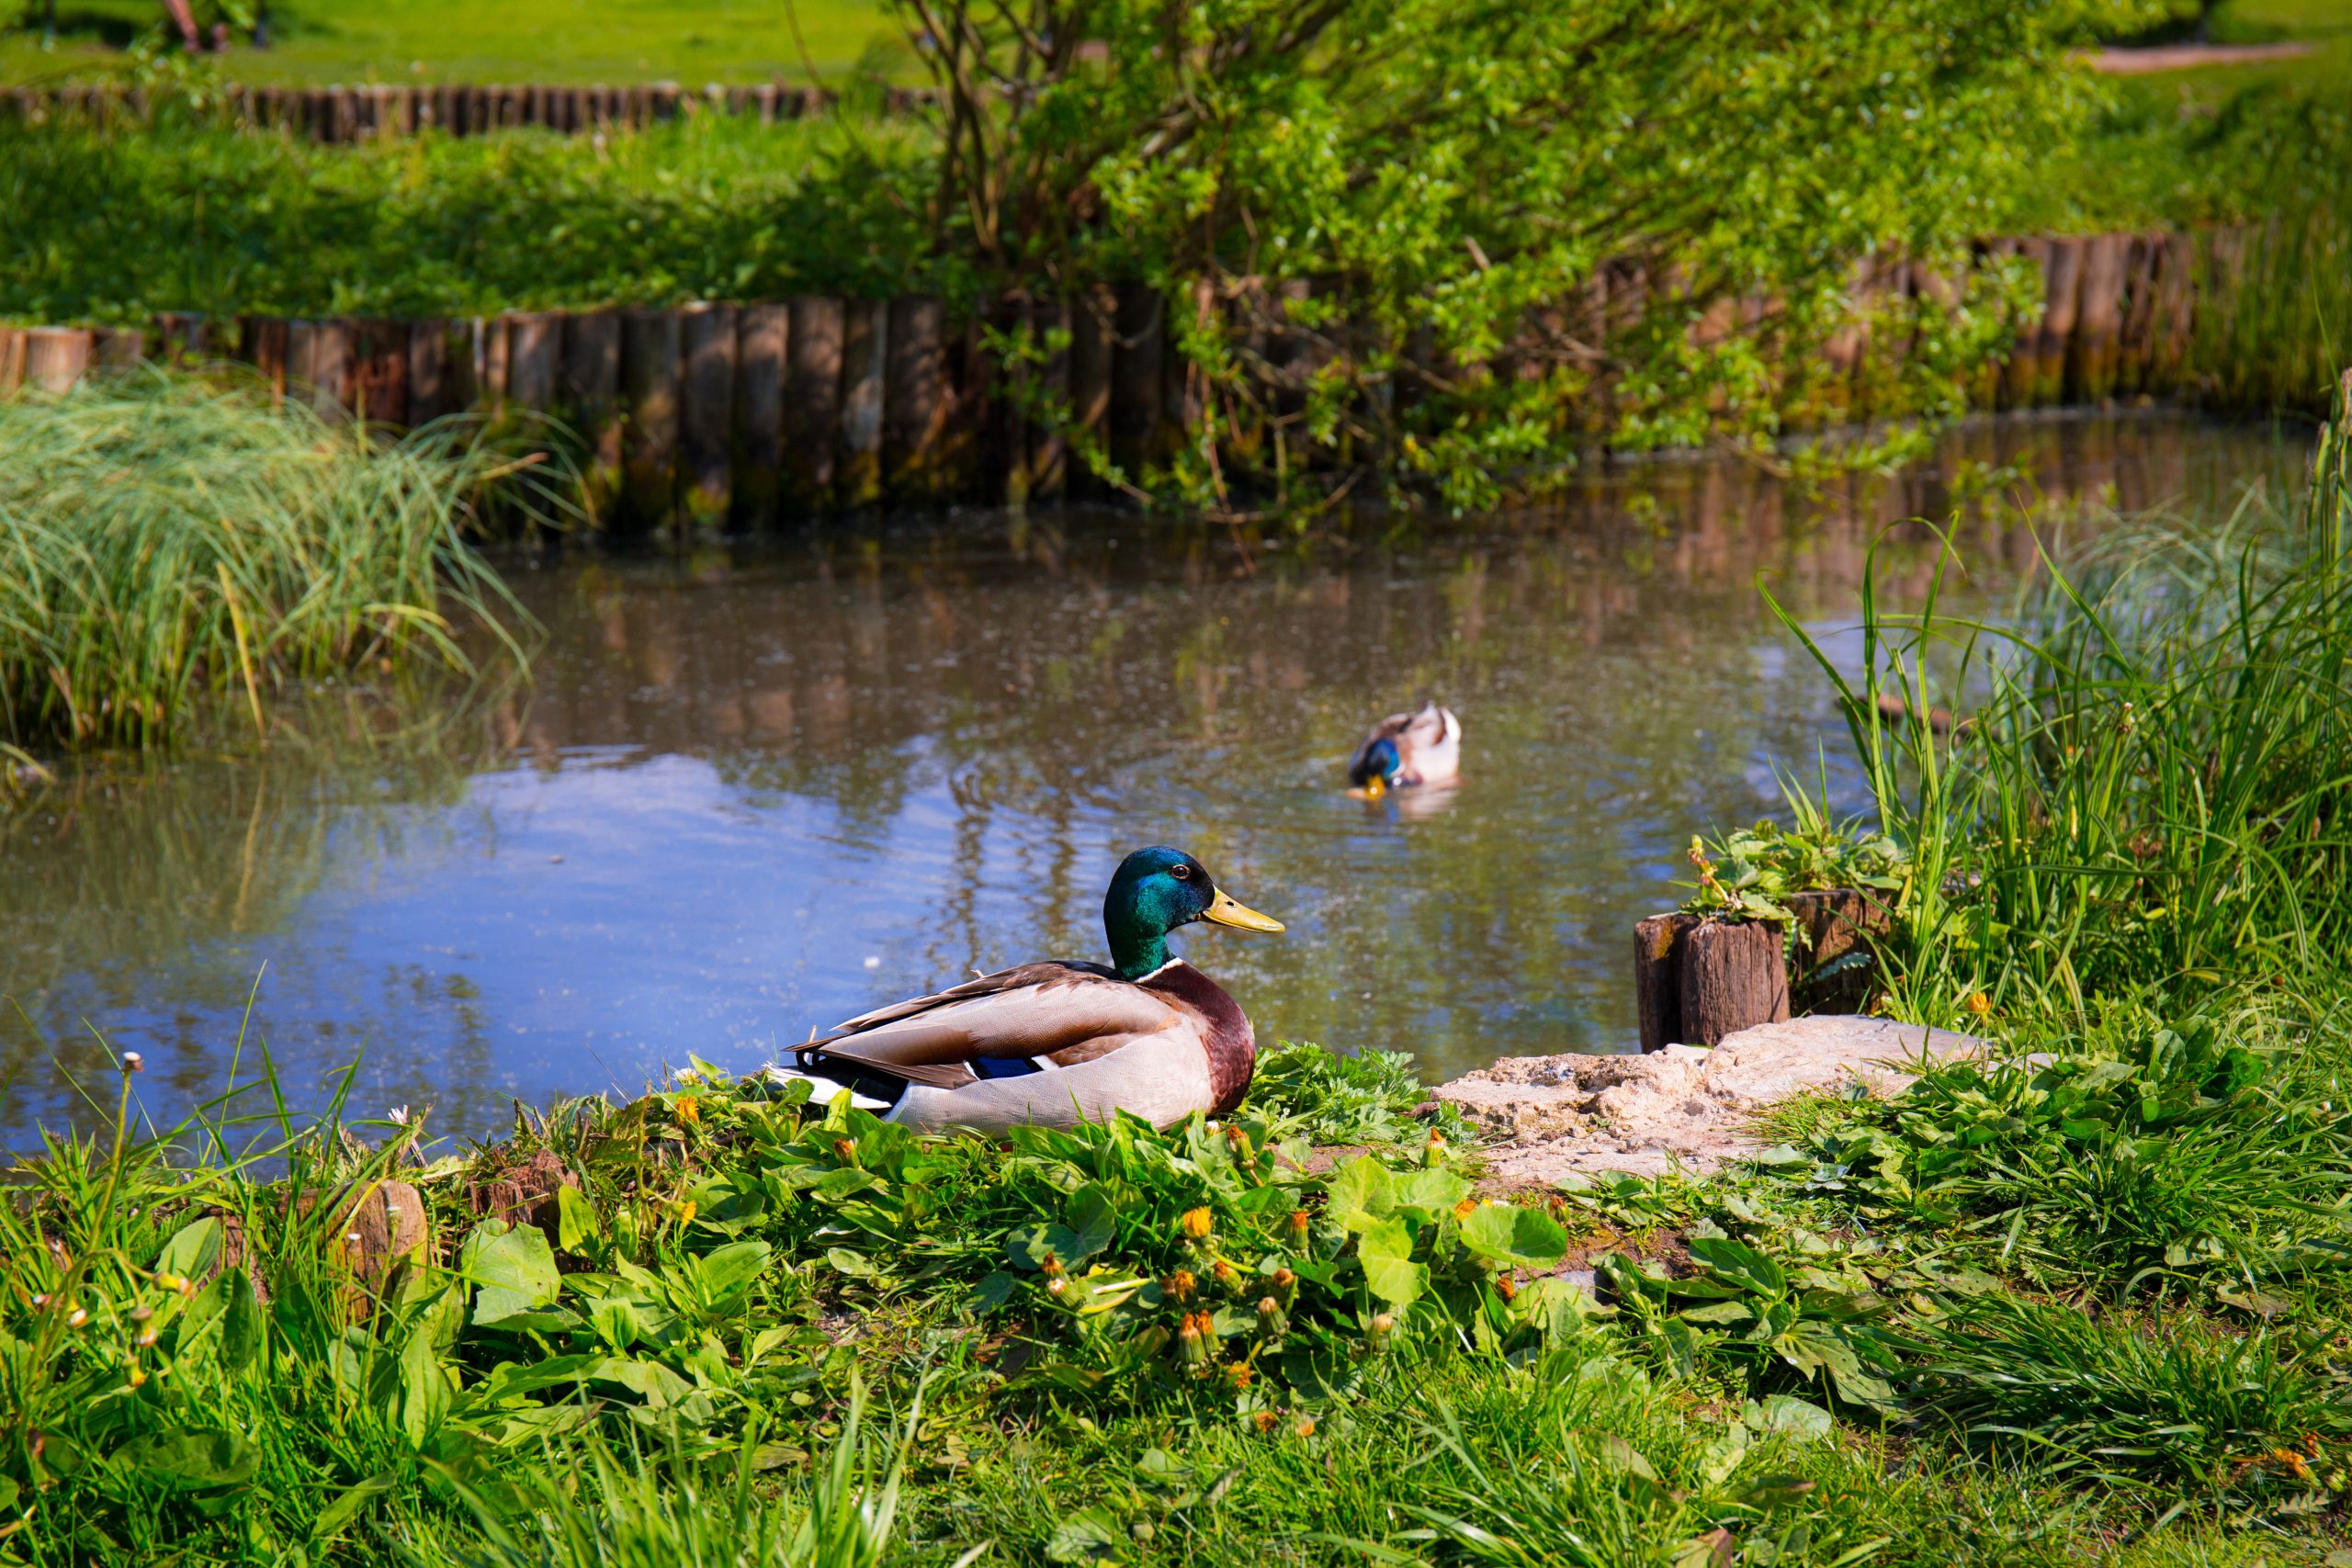 Retention pond with Mallard ducks